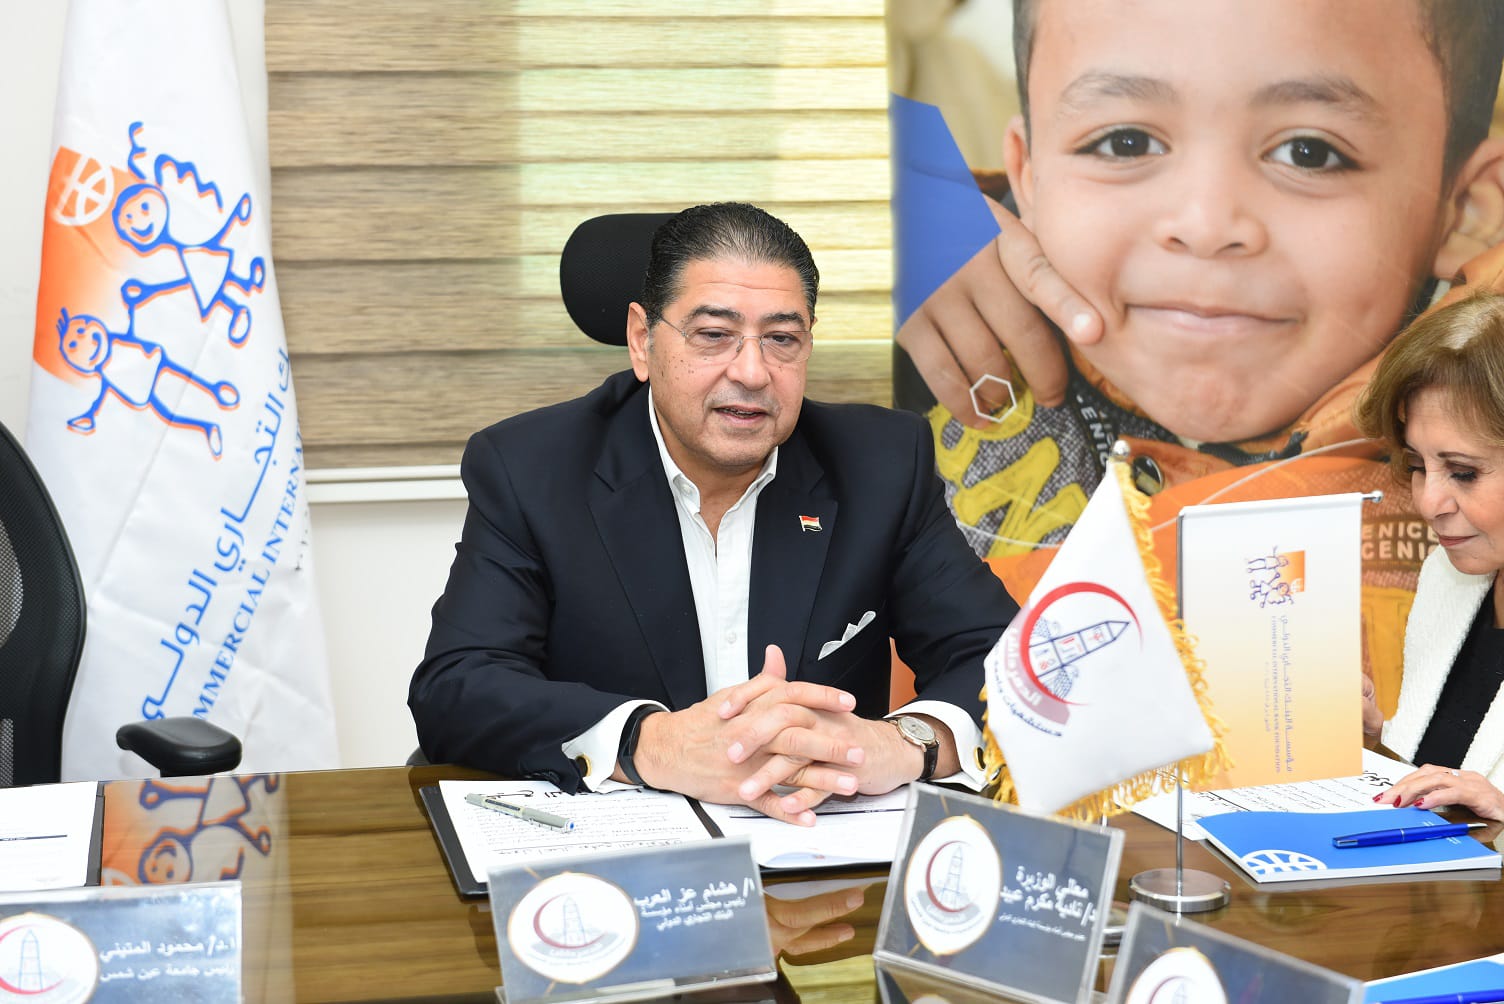 مؤسسة البنك التجاري الدولي وجامعة عين شمس يحتفلا بتوقيع اتفاقية تمويل الجناح الجراحى بـ 